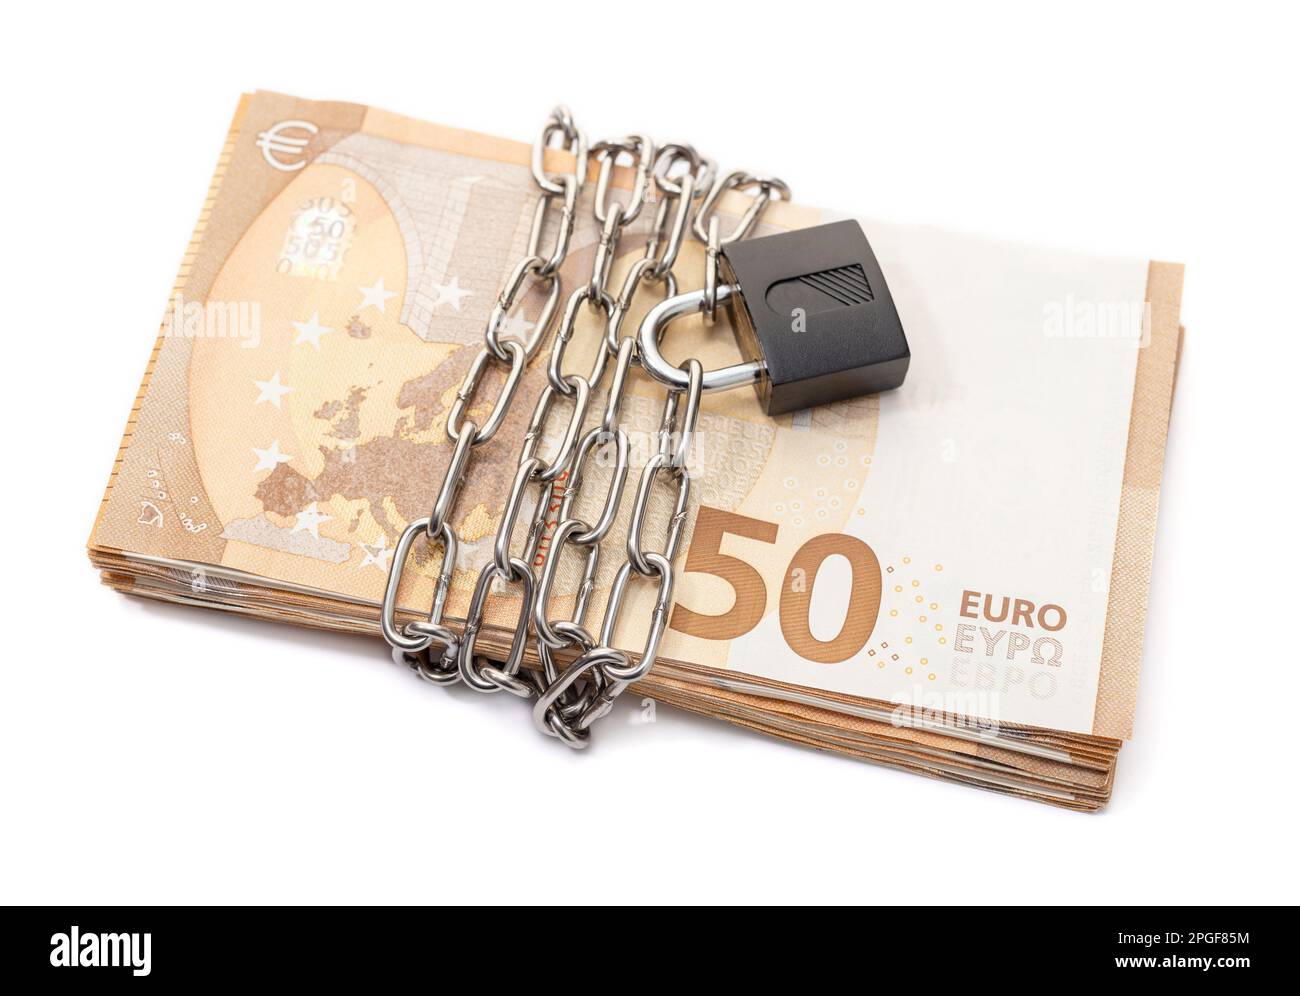 Sicherheitsschloss und Kette auf Euro-Stapel-Banknoten isoliert auf weißem Hintergrund. Währungskrise, Finanzprobleme, Ausfallkonzept Stockfoto